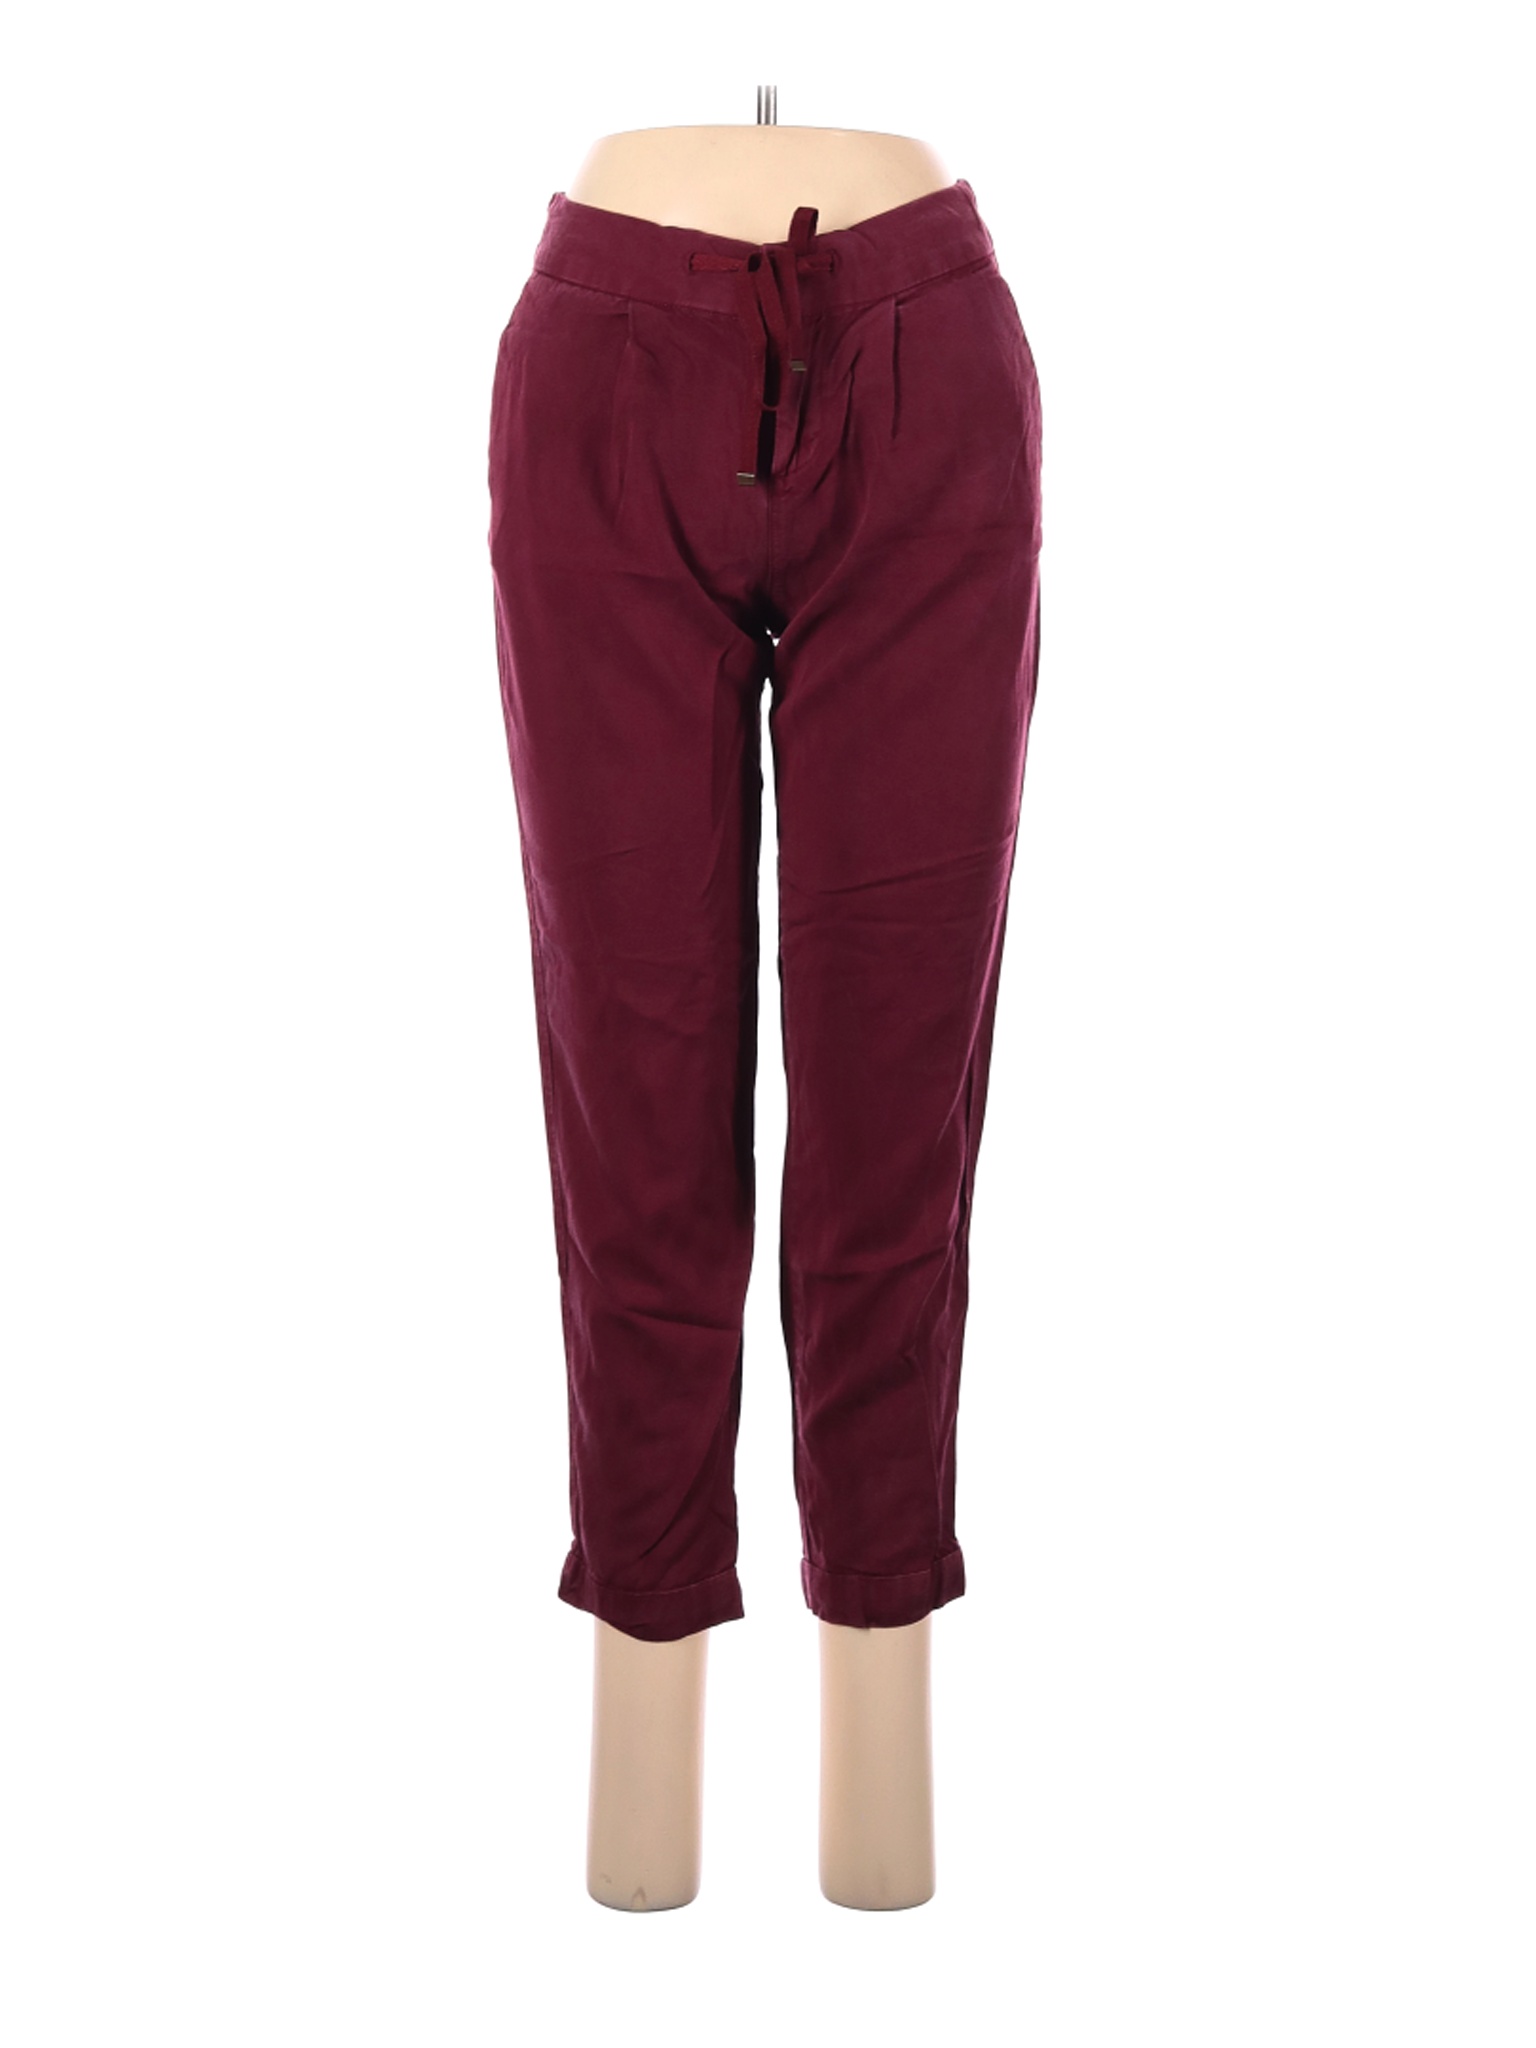 Ann Taylor LOFT Women Red Casual Pants 0 | eBay